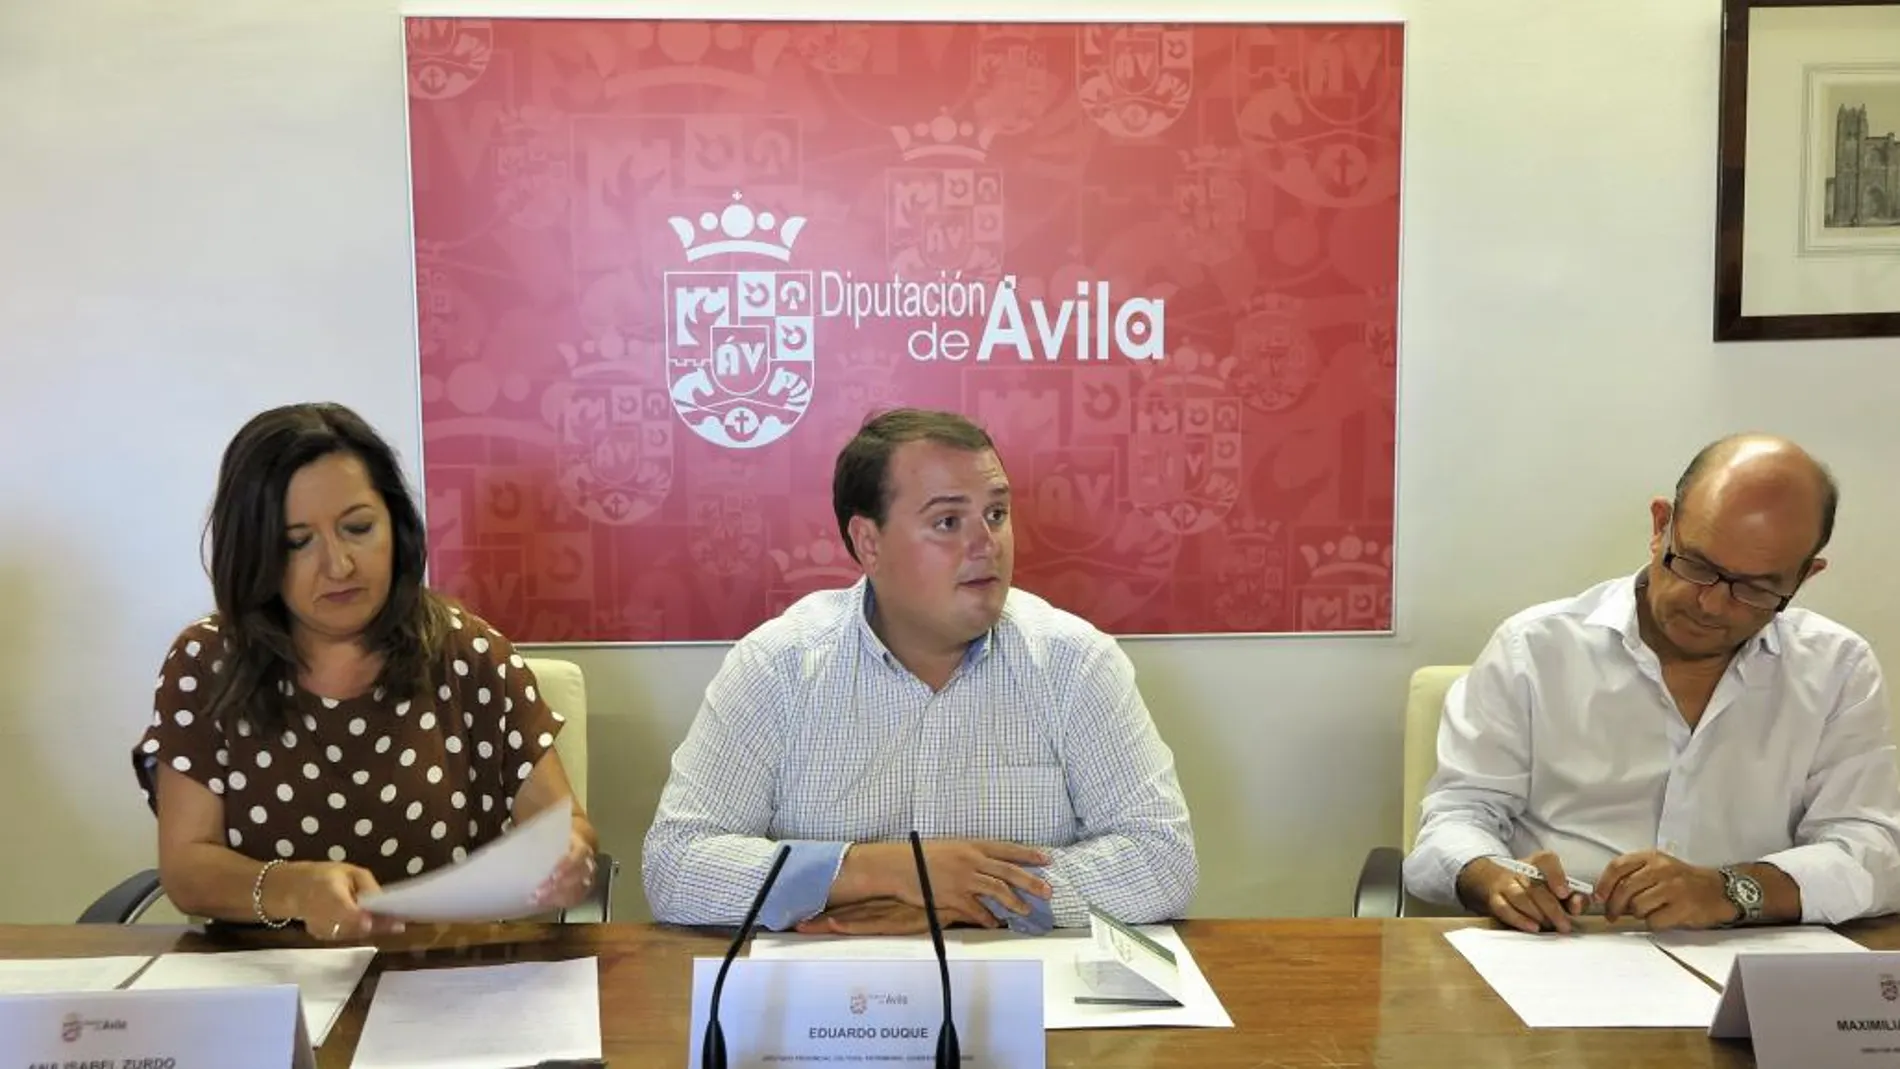 El diputado de Cultura de la Diputación de Ávila, Eduardo Duque, informa del fallo